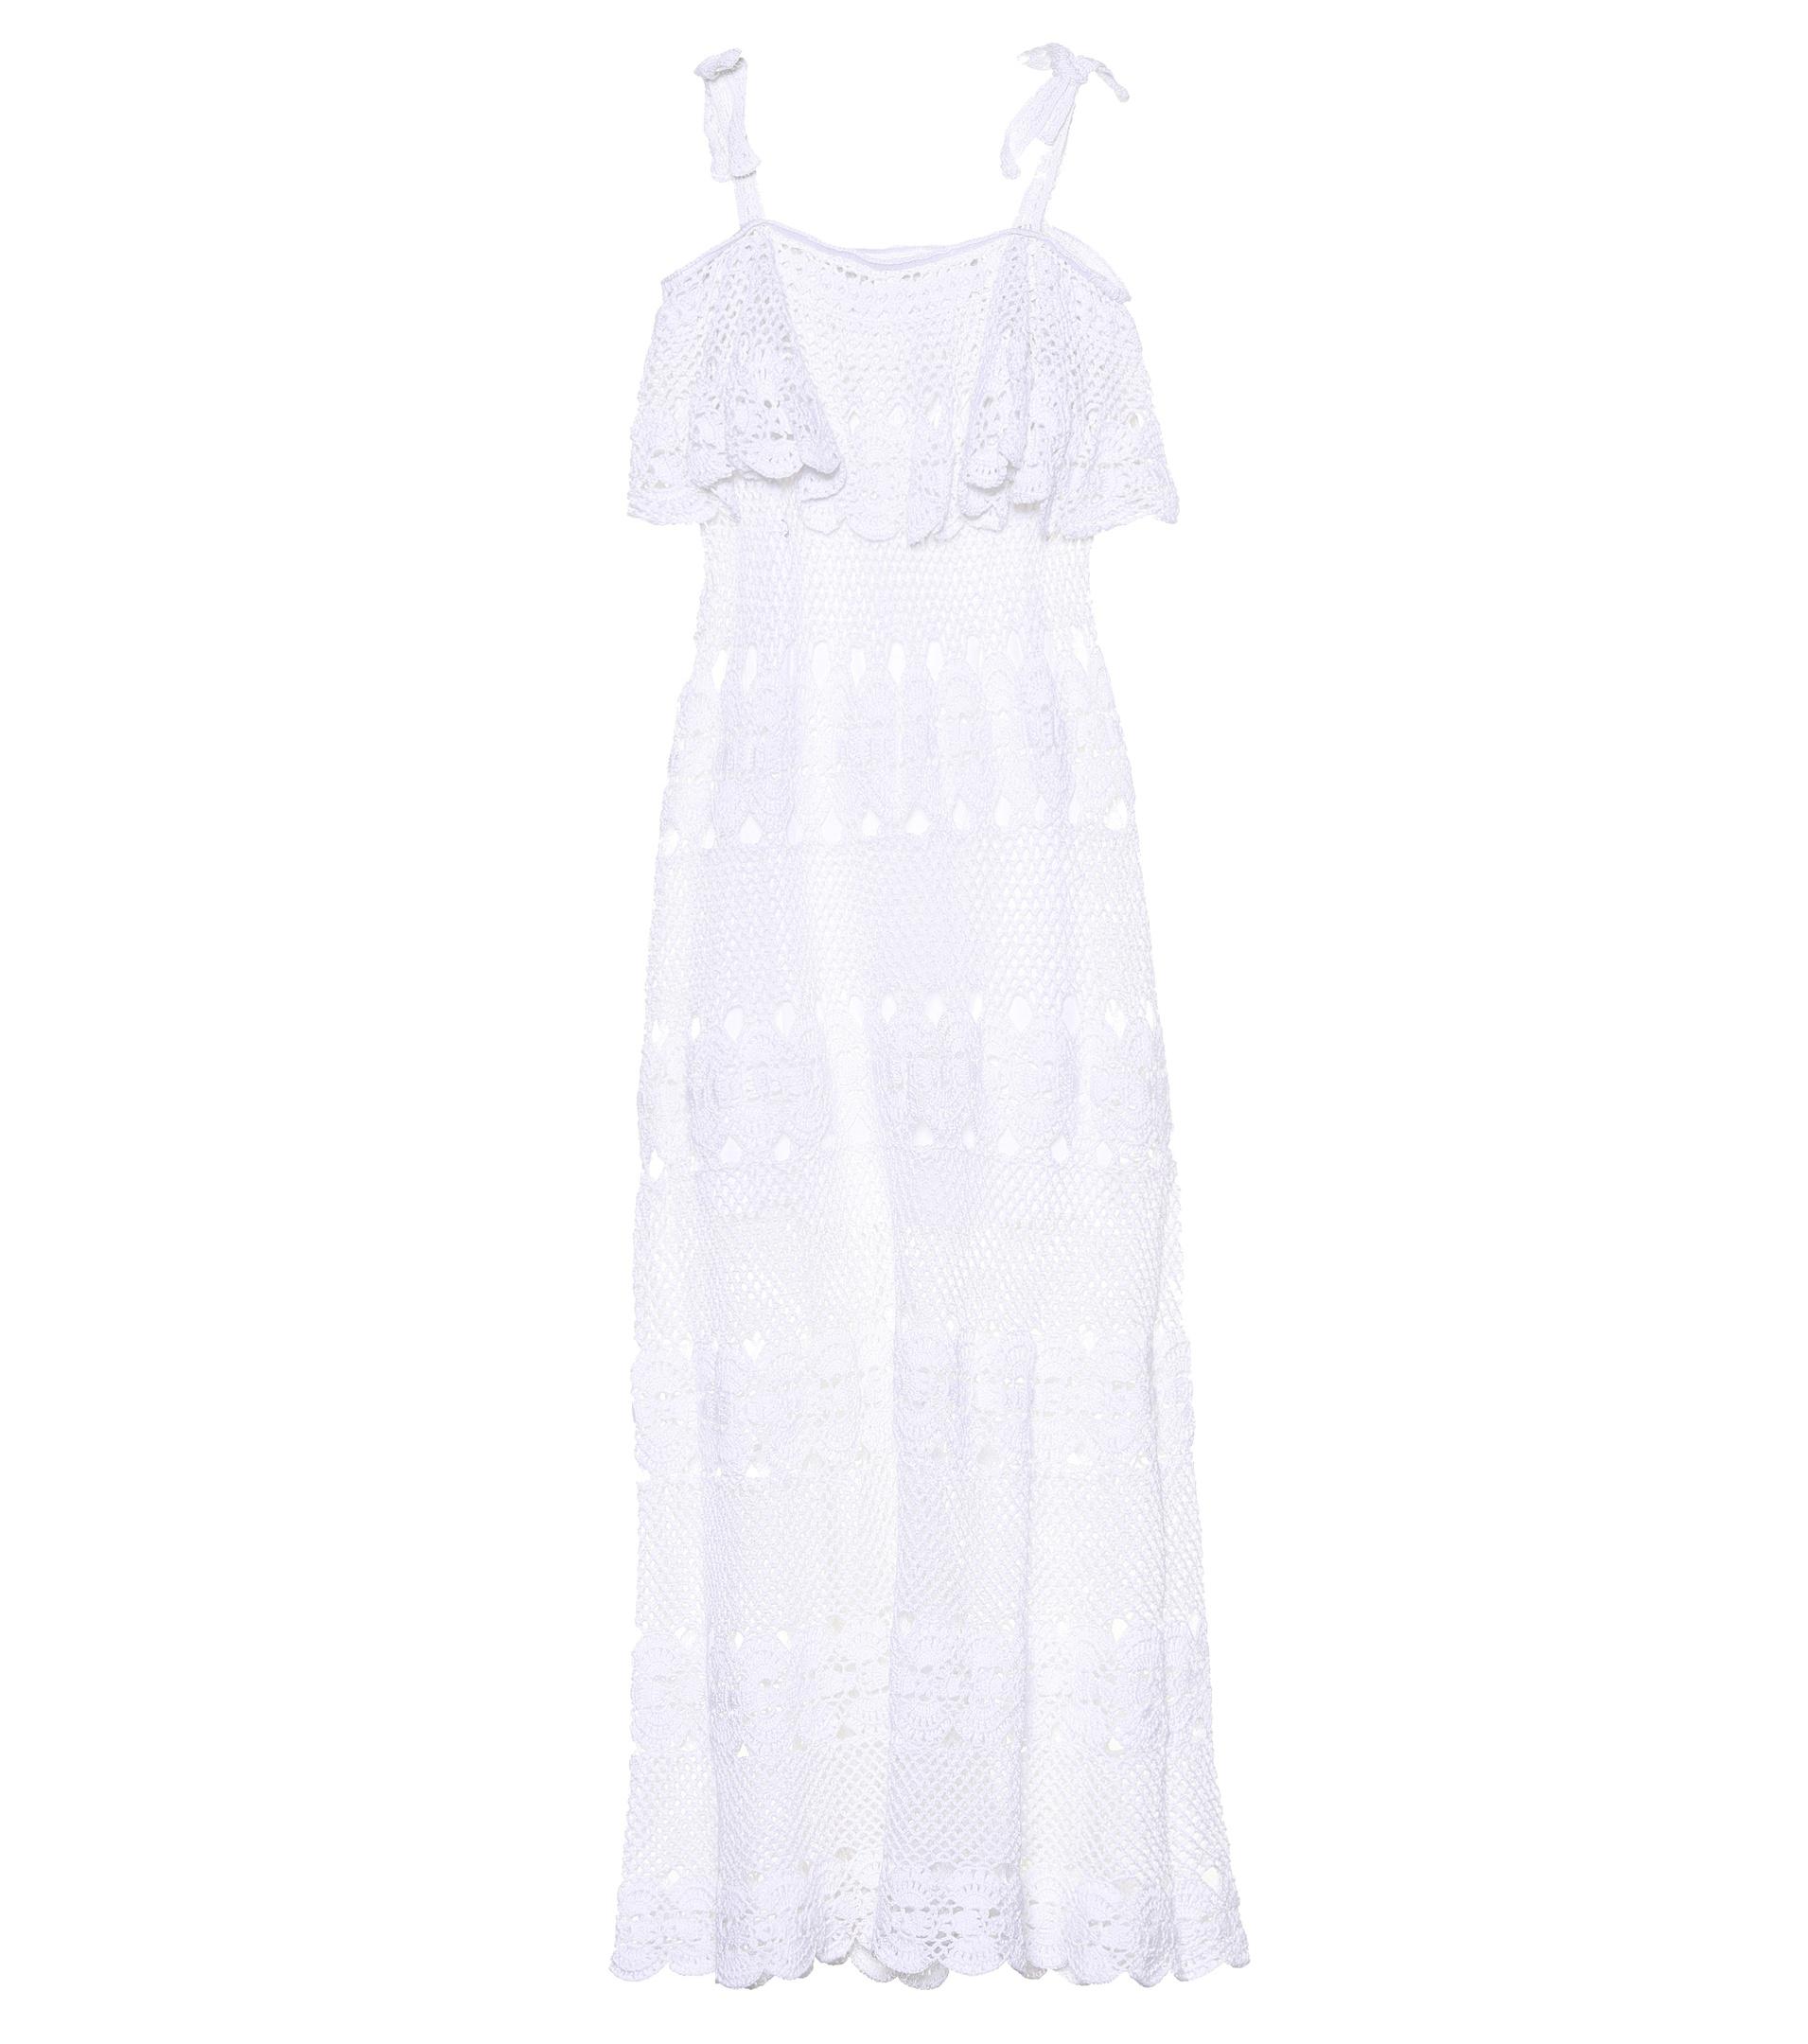 Anna Kosturova Marianne Crocheted Cotton Dress in White - Lyst